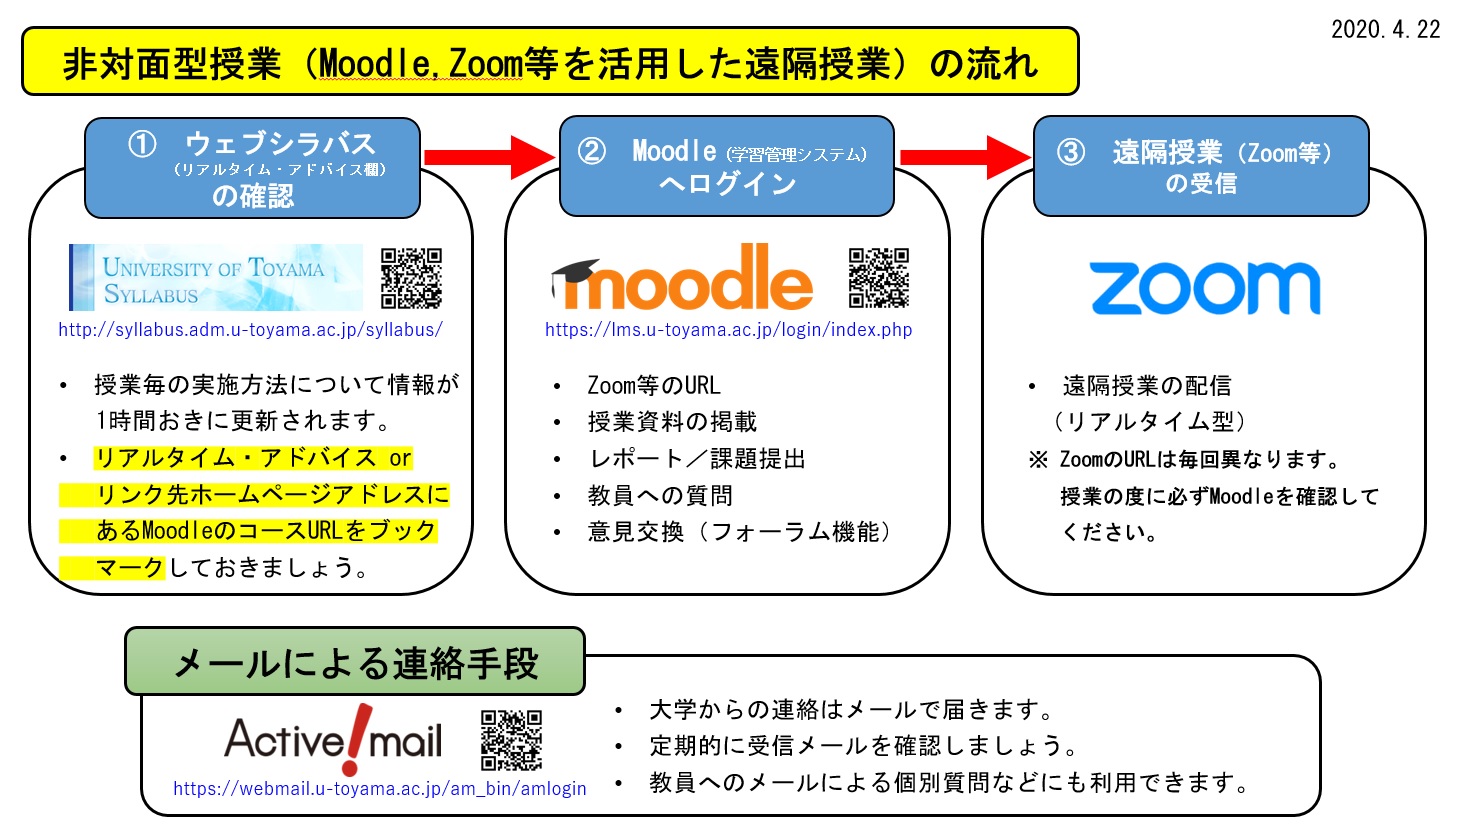 非対面型授業（Moodle,Zoom等を活用した遠隔授業）の流れ